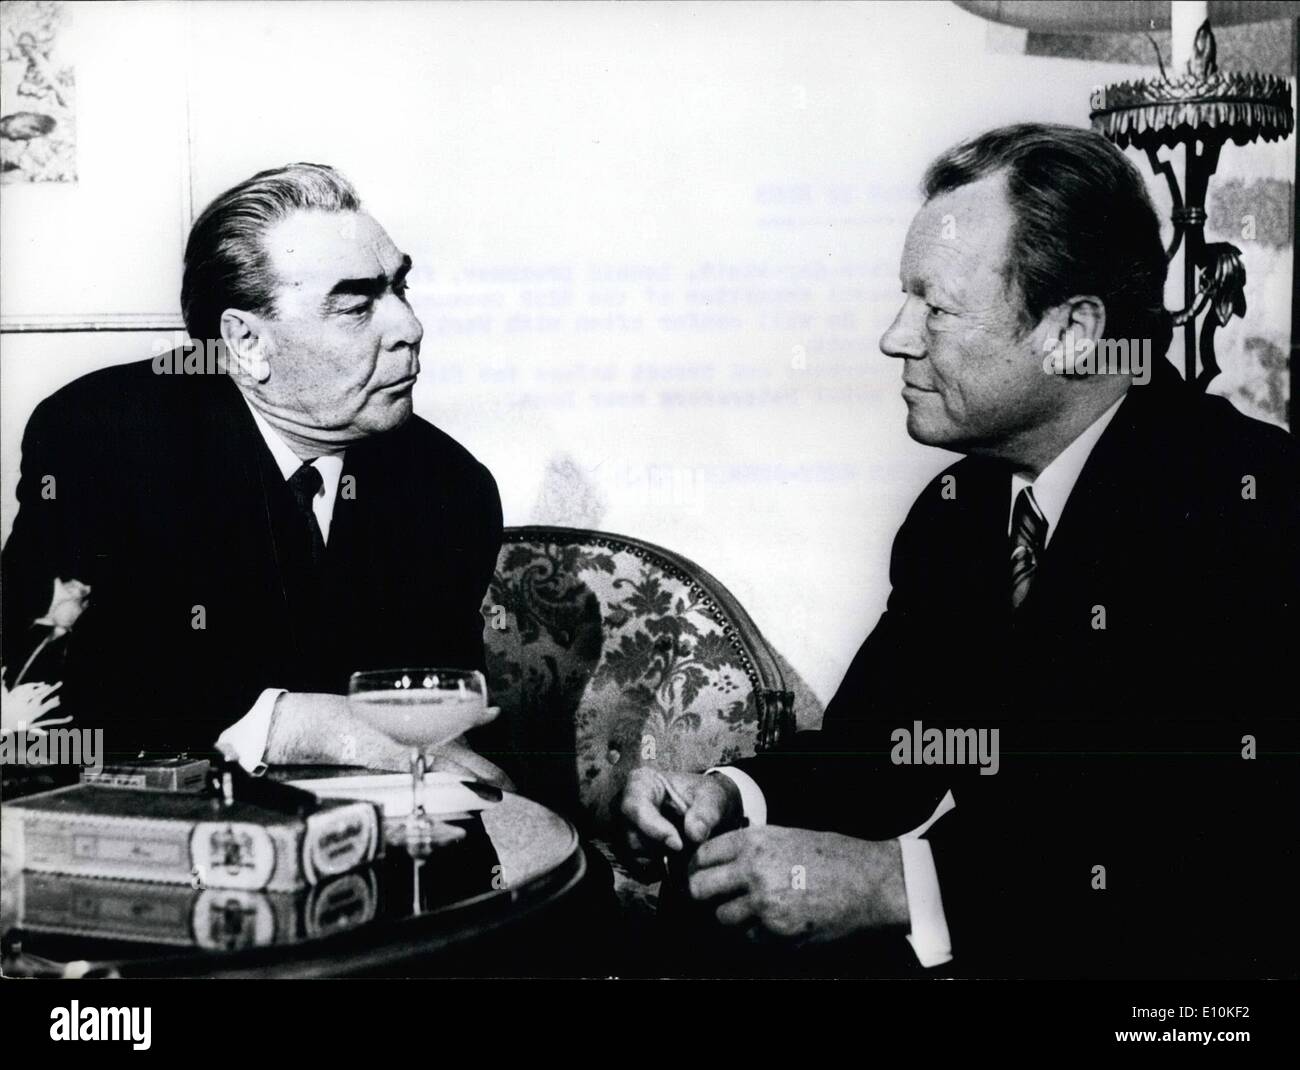 05 maggio 1973 - Brezhnev a Bonn: per un periodo di cinque giorni di visita al sito, Leonid Brezhnev, primo segretario del comitato centrale dell'URSS Partito Comunista è arrivato a Bonn. Egli conferirà spesso con West il Cancelliere tedesco Willy Brandt. Mostra fotografica di Brezhnev e Brandt prima della prima conversazione in hotel Petersberg a Bonn. Foto Stock